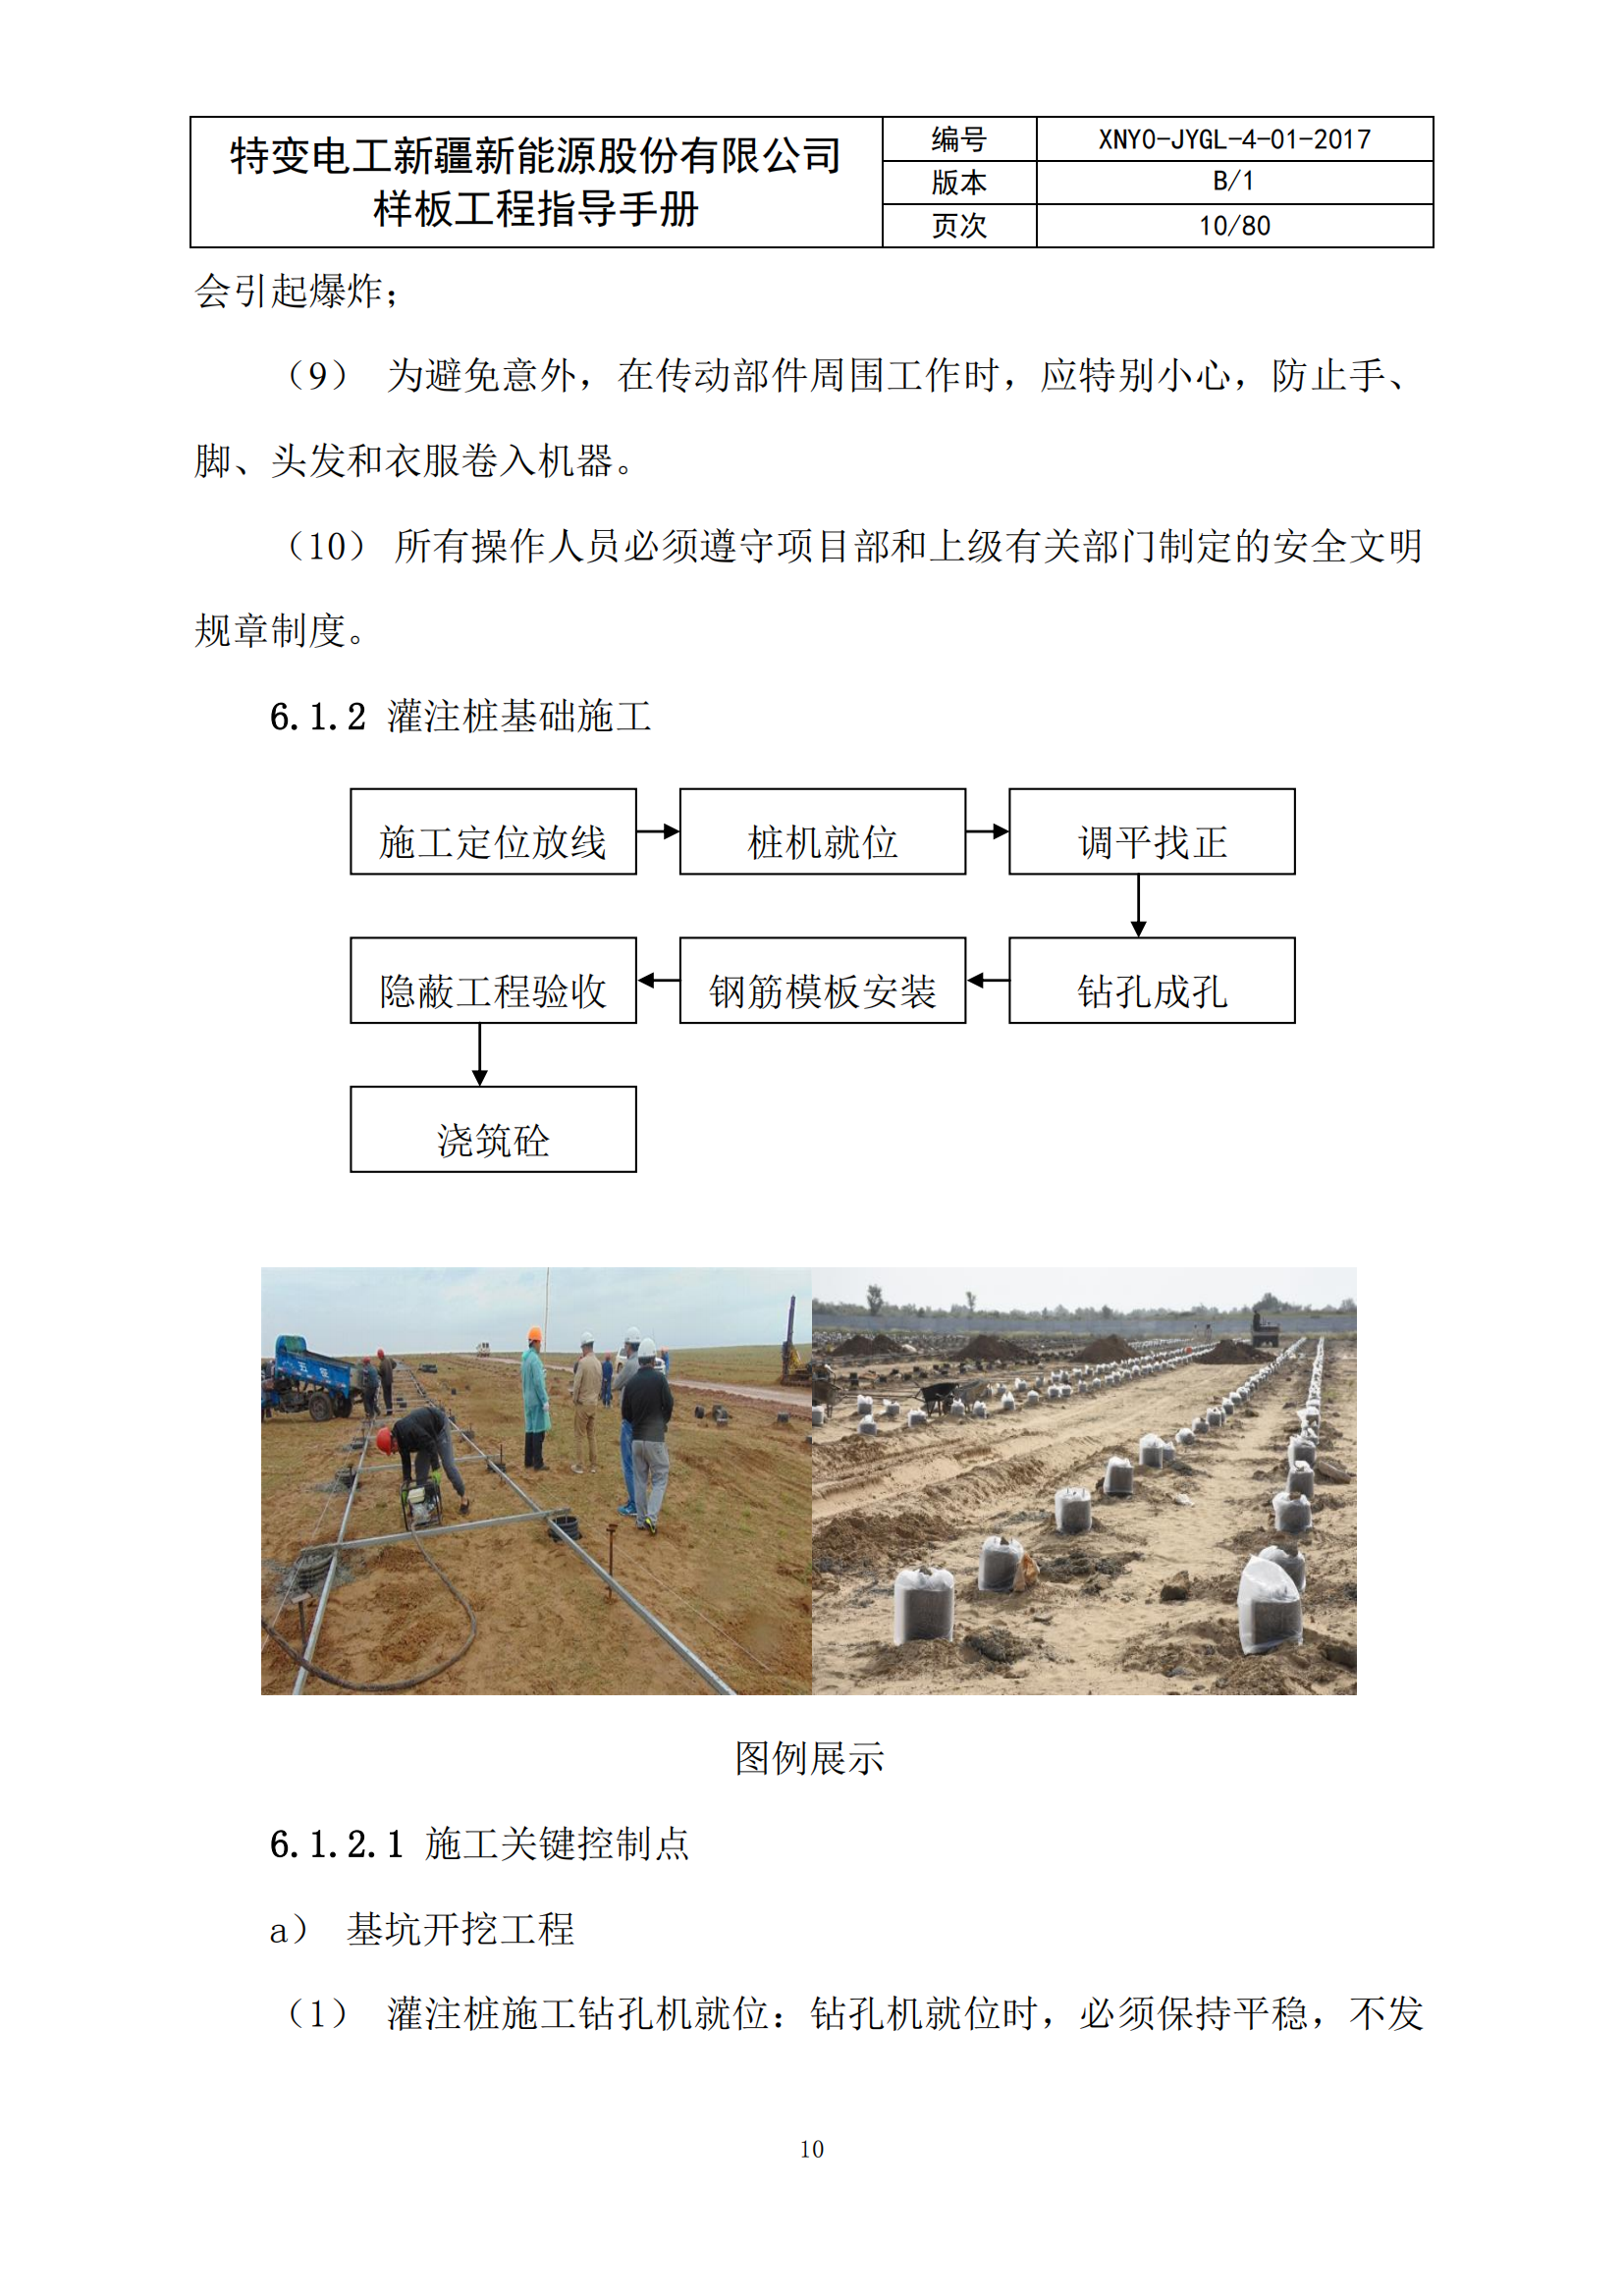 土建电气施工实体样板作业指导手册插图(10)